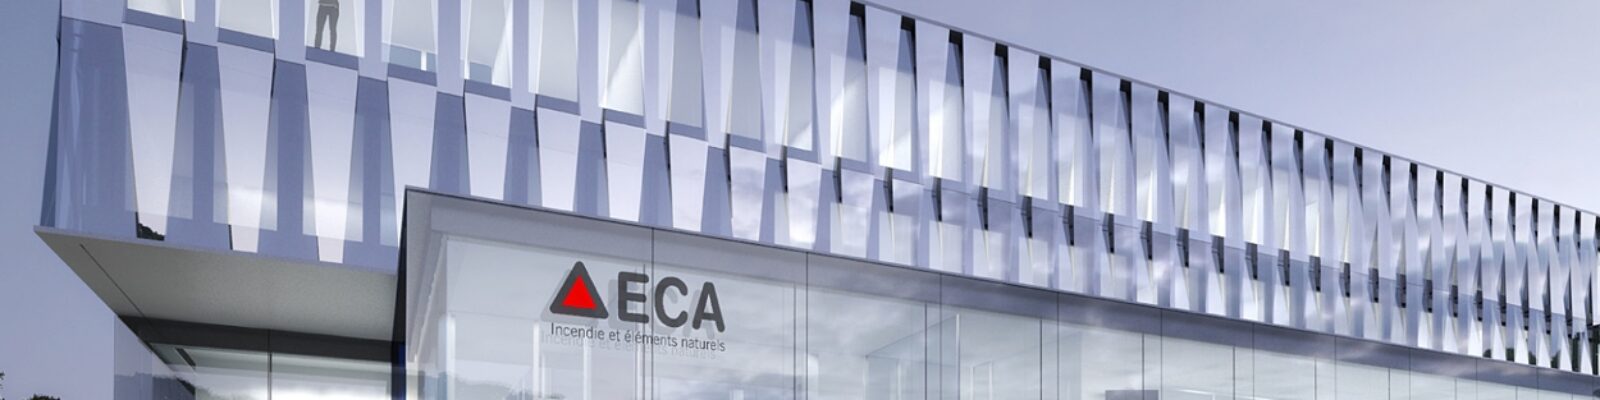 ECA Headquarter vista esterno - illuminazione ufficio